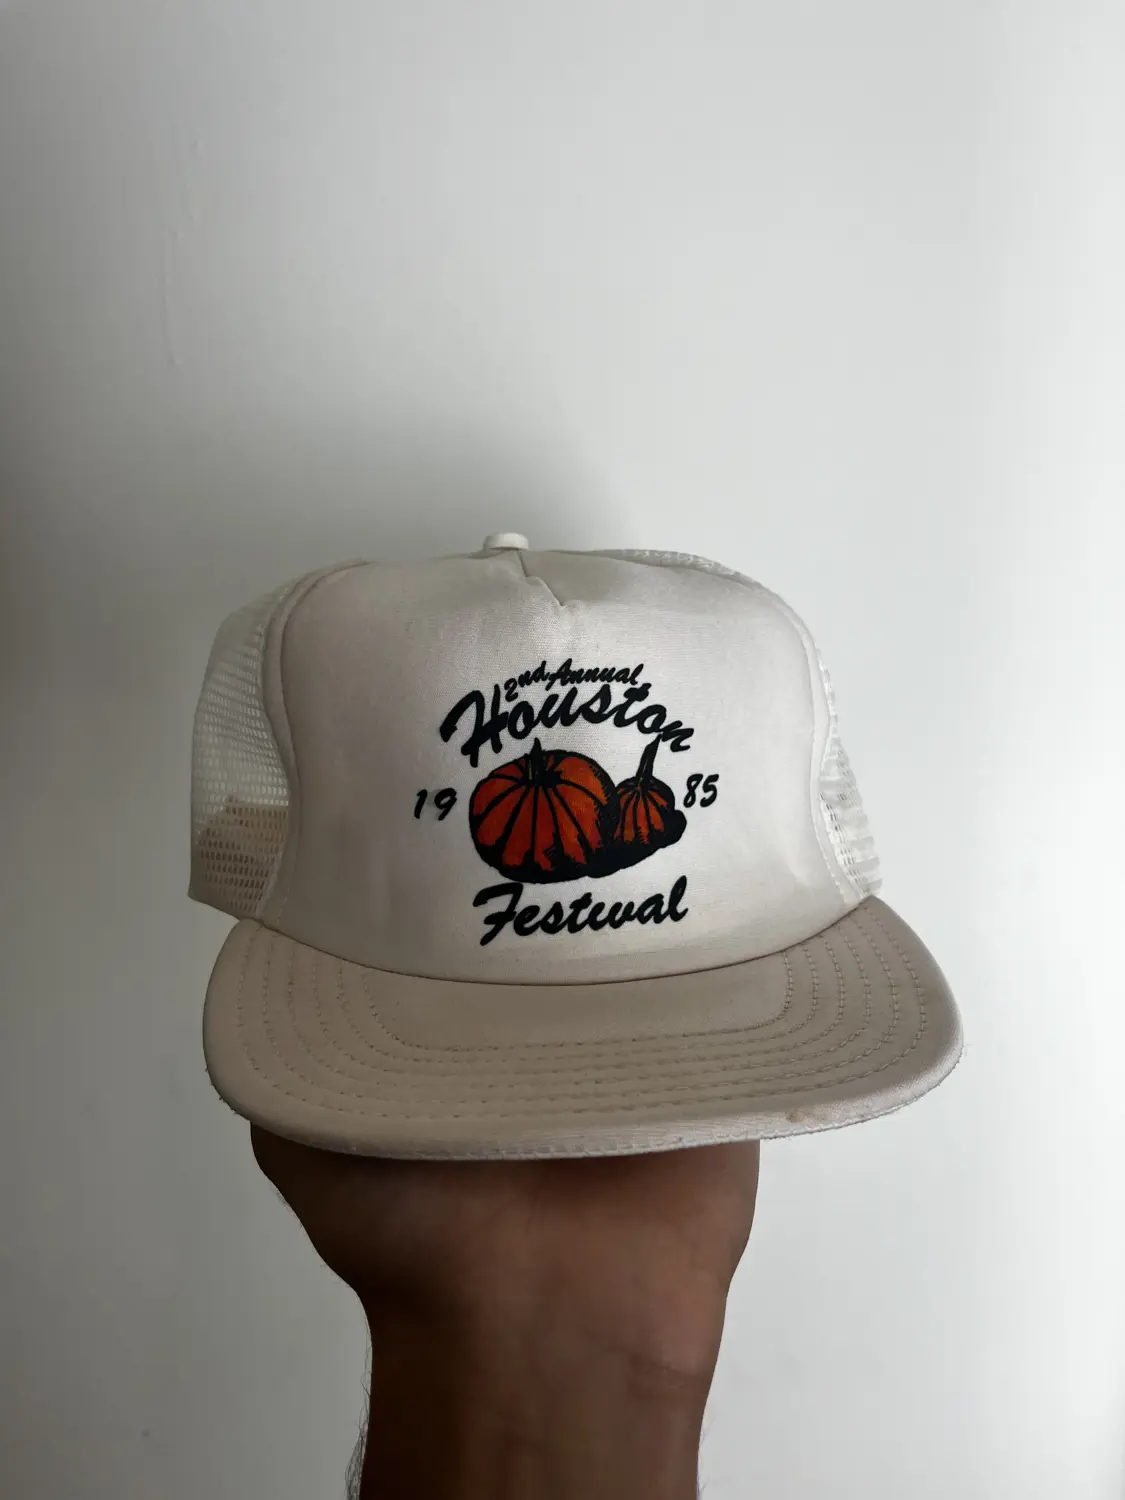 1985 Houston Festival Hat